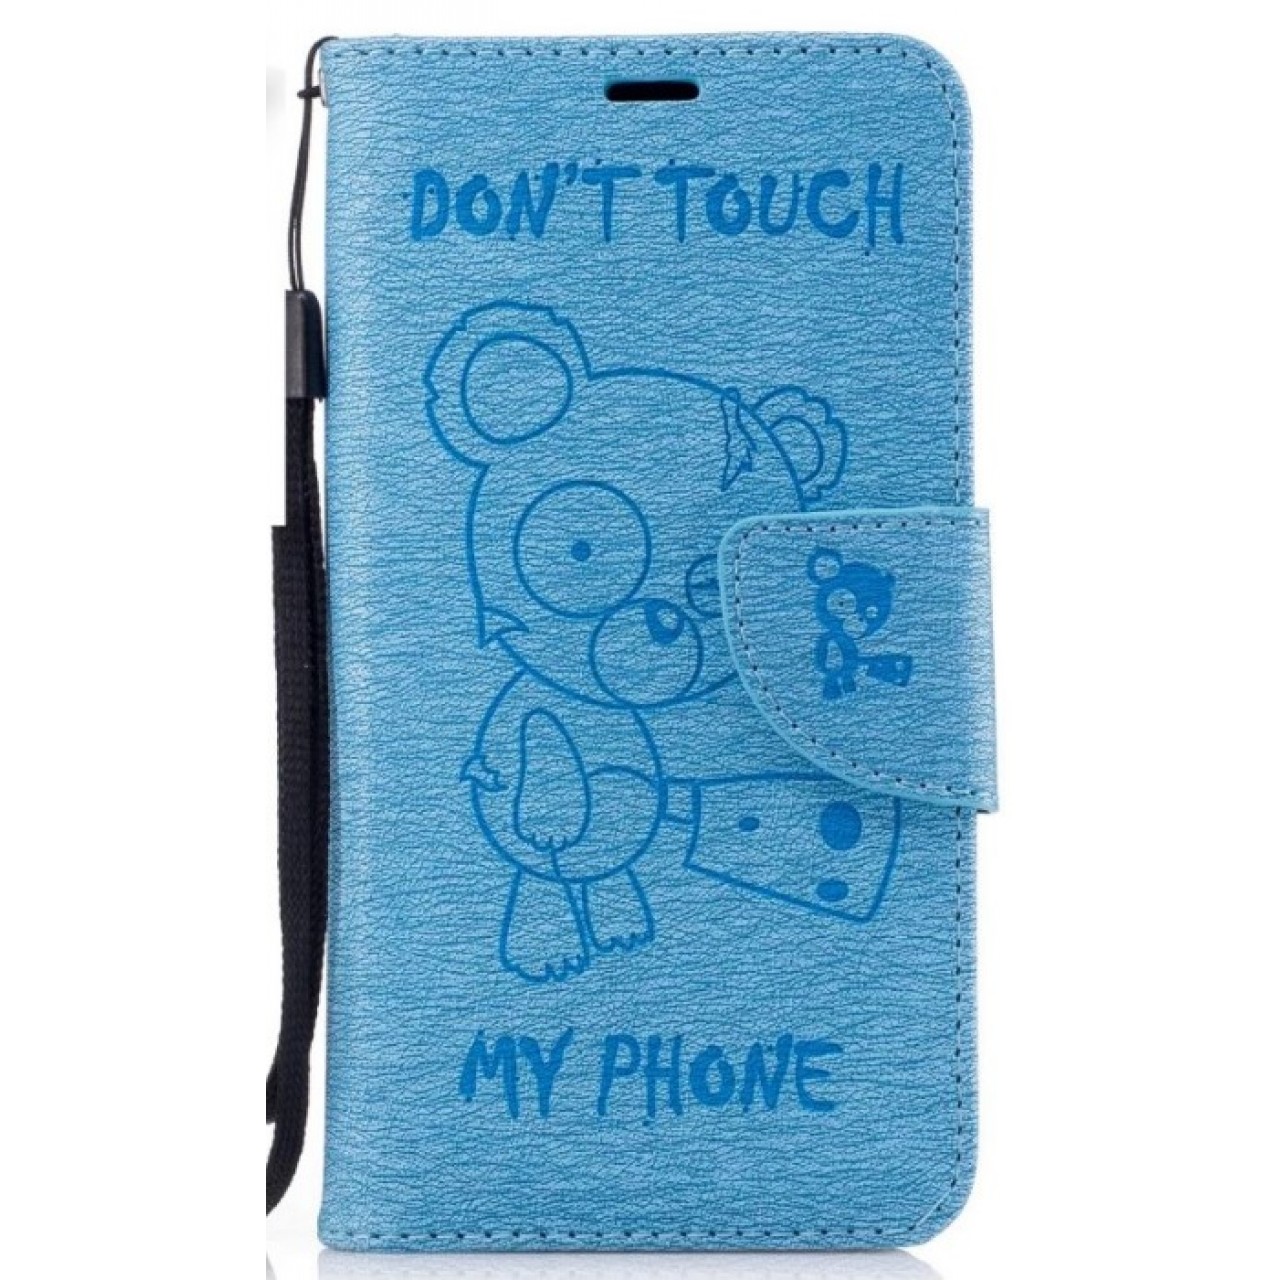 Θήκη Samsung Galaxy A3 2017 (Α320F) PU Leather Πορτοφόλι flip Don t touch my phone - 2389 - Γαλάζιο - OEM